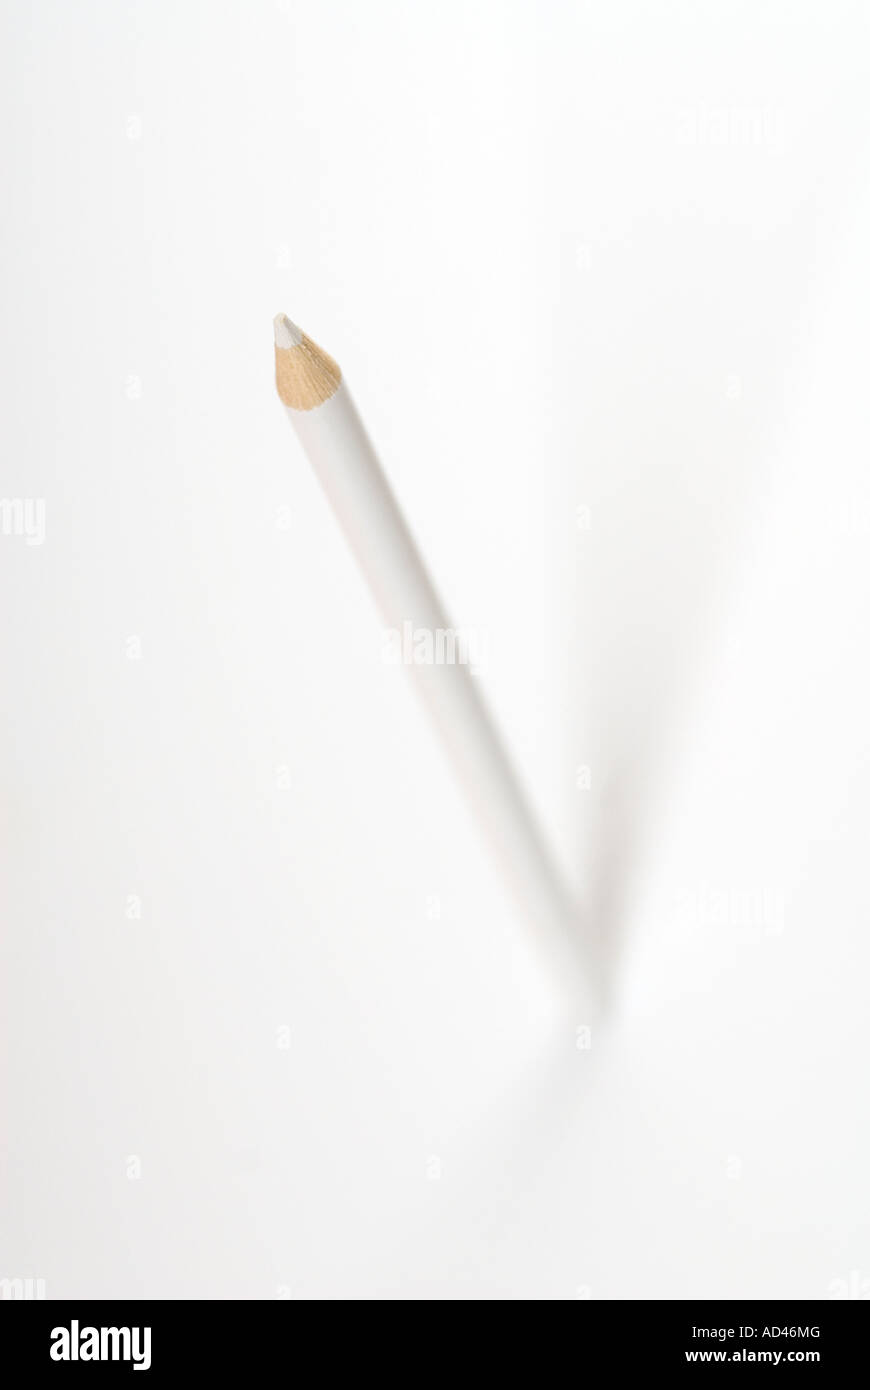 White pencil Stock Photo